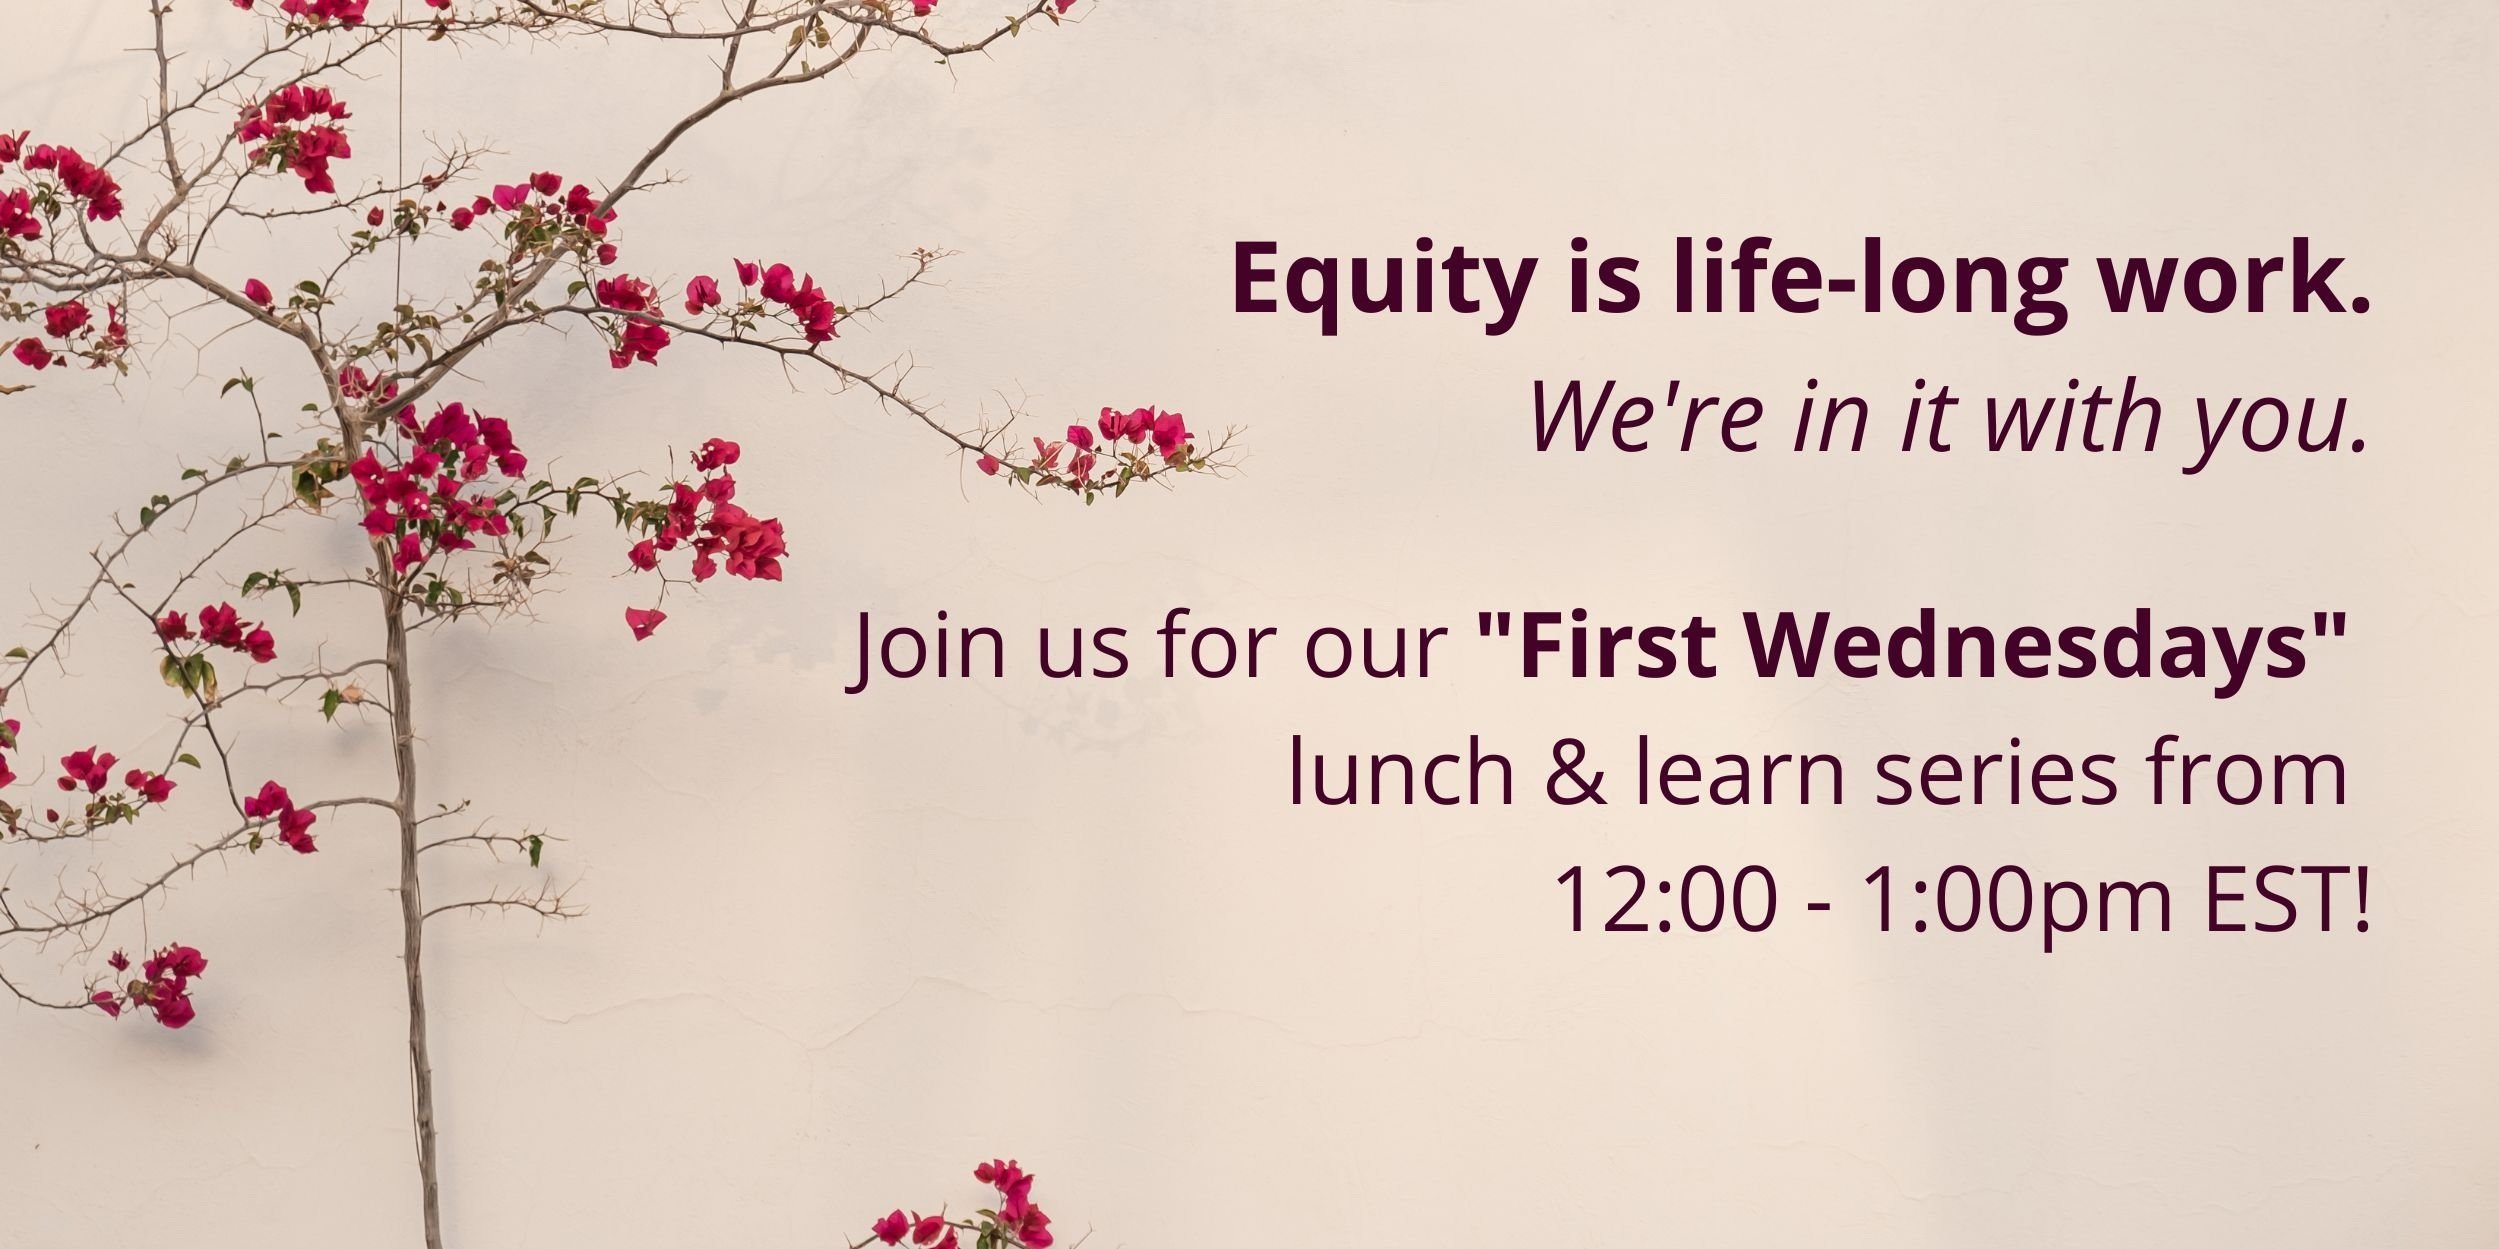 Acompáñenos en nuestro almuerzo de los "Primeros miércoles" de 12:00 a 13:00 EST. La equidad es un trabajo de toda la vida. Estamos en ello contigo.